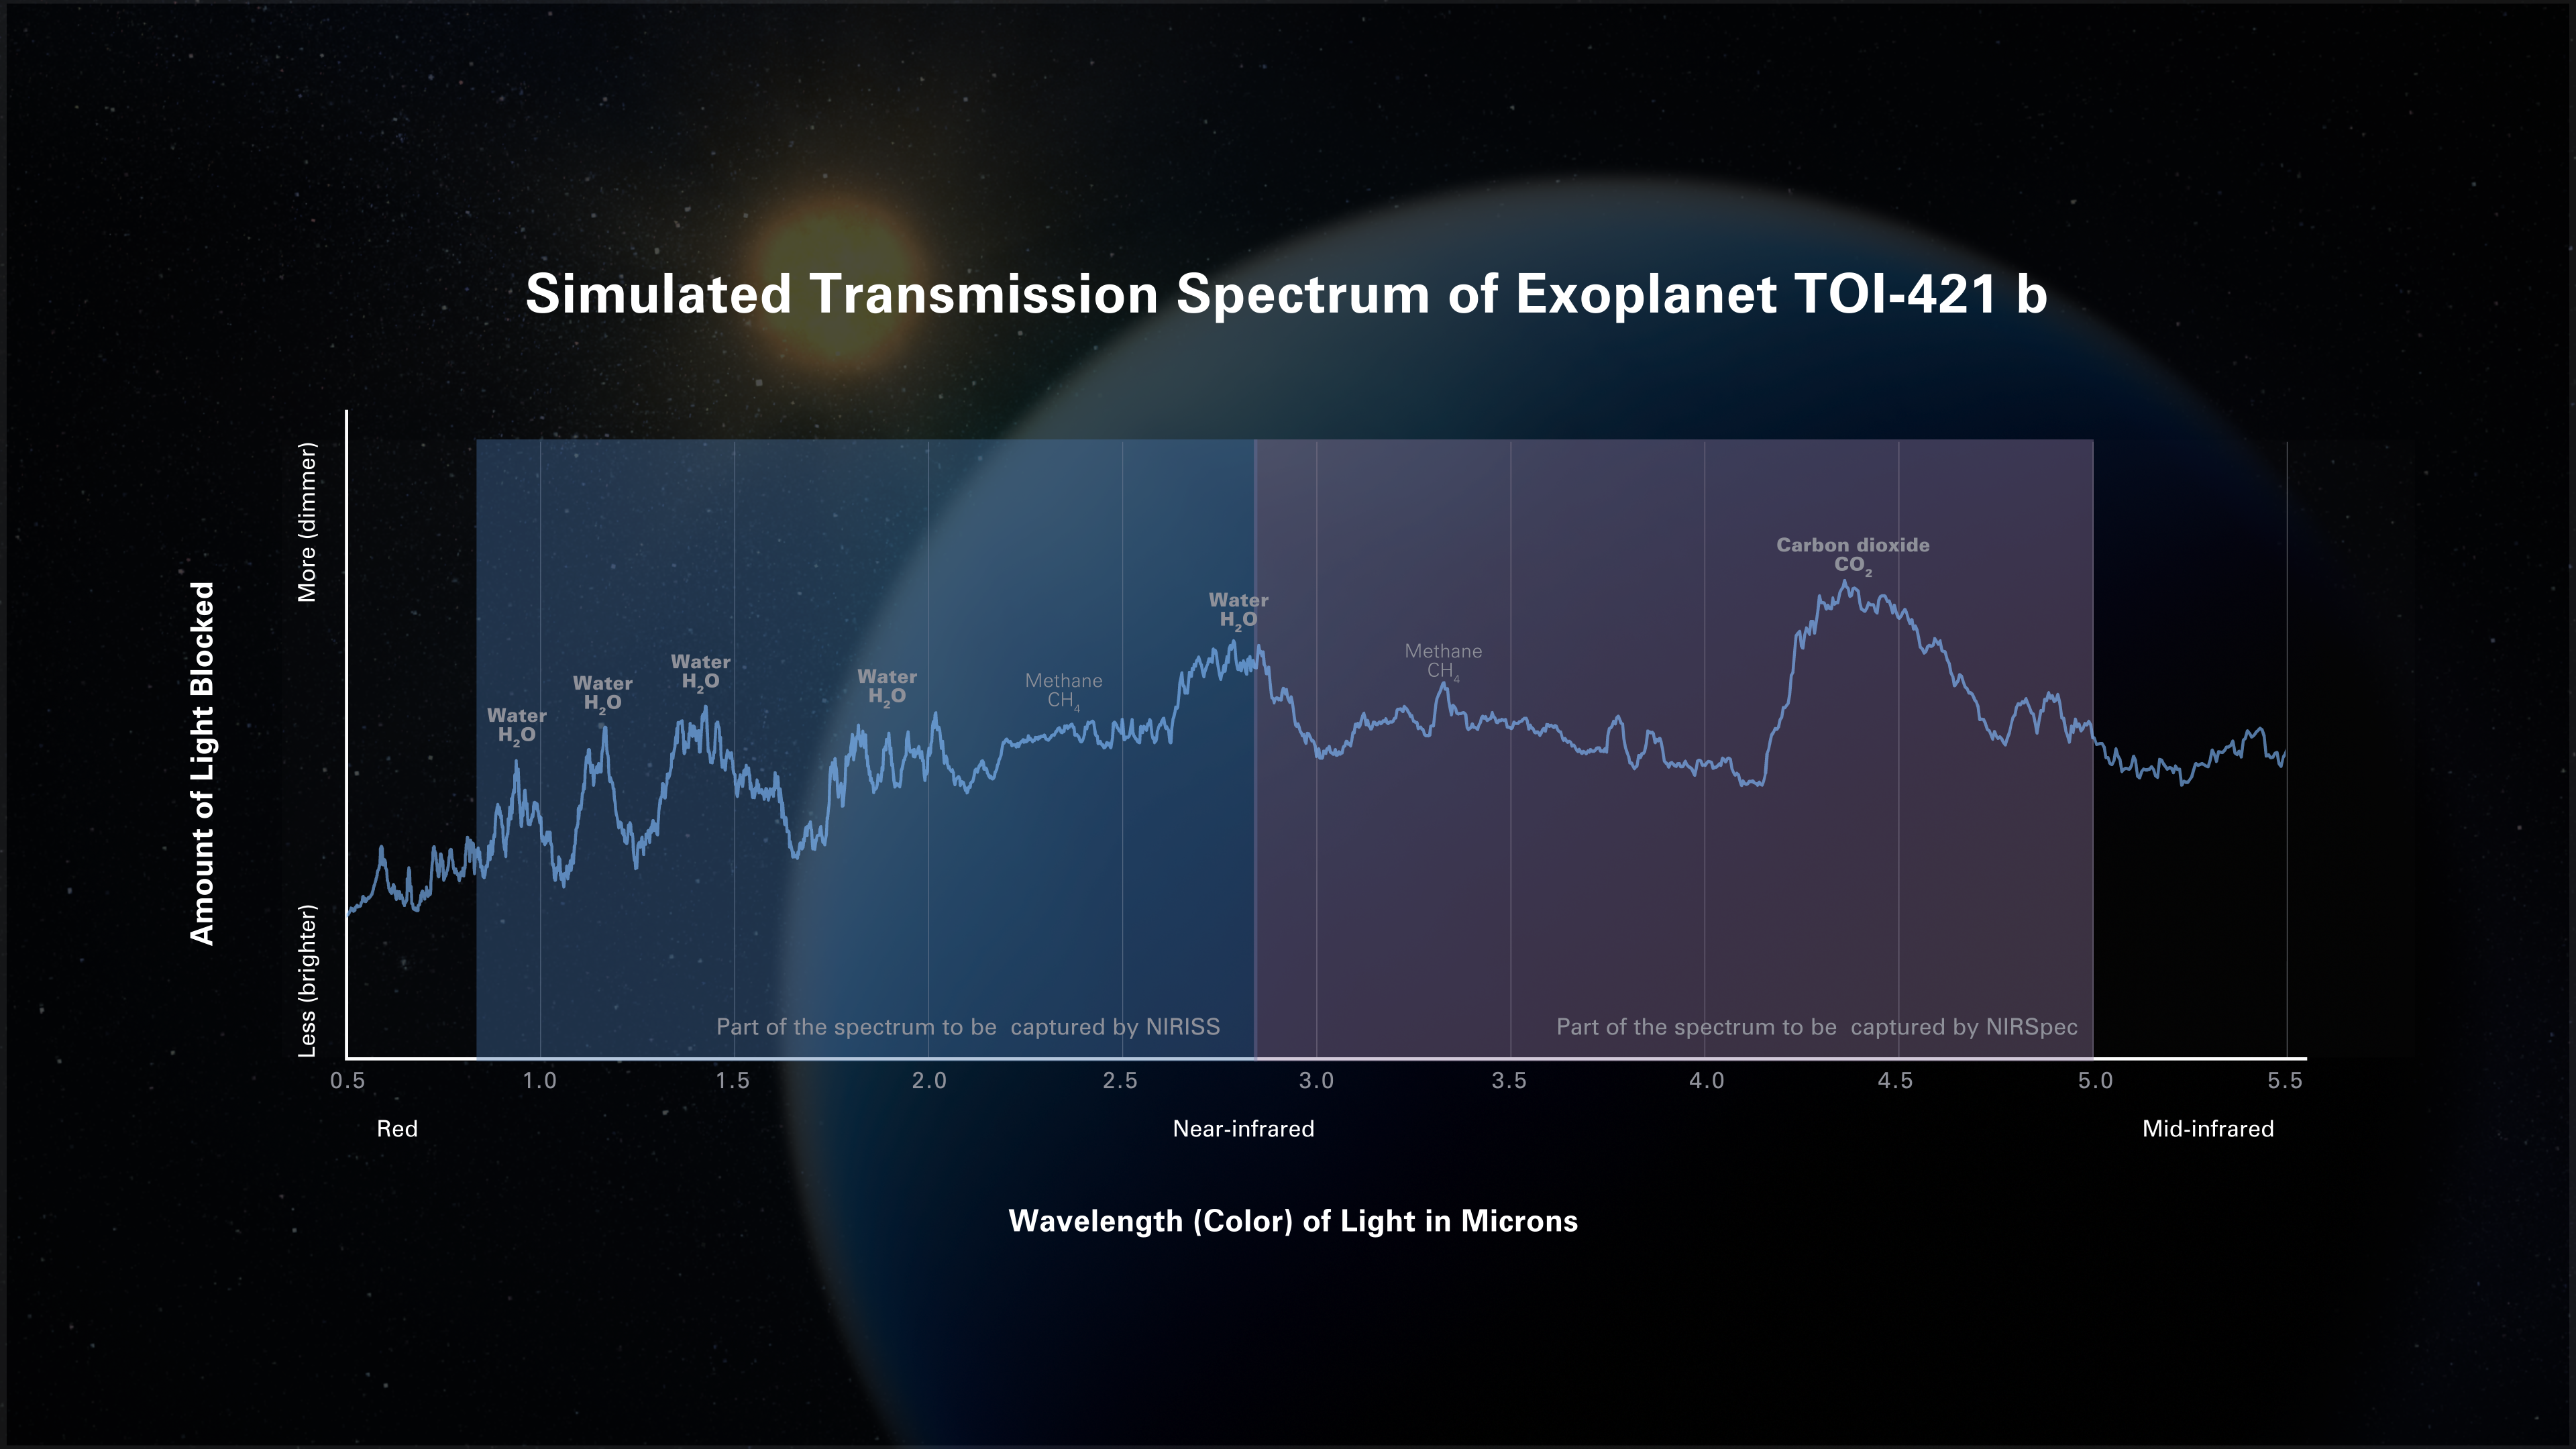 Symulowane widmo transmisyjne atmosfery egzoplanety TOI-421 b (odległość 244 l.św. od Ziemi) w bliskiej podczerwieni, które powinny zarejestrować instrumenty NIRISS i NIRSPec współpracujące z Teleskopem Webba. Astronomowie wykorzystują modele numeryczne, aby przewidzieć jak będzie wyglądało widmo egzoplanety przy założeniu prawdopodobnych warunków w jej atmosferze takich jak temperatura, obfitości różnych gazów i rodzajów aerozoli. W tej szczególnej symulacji przyjęto, że gorący mini-Neptun TOI-421 b, posiada gorąca wodorowo-węglowo-tlenową atmosferę, która nie zawiera chmur i aerozoli. Dzięki spektroskopii z użyciem Teleskopu Webba, w przyszłości będzie możliwa łatwa identyfikacja i pomiary ilościowe obfitości molekuł takich jak woda (H2O), metan (CH4) i dwutlenek węgla (CO2) w takiej atmosferze nie zawierającej aerozoli. W widmie widać silne maksima wskazujące na występowanie pary wodnej i dwutlenku węgla oraz mniejszej ilości metanu. Źródło: NASA, ESA, CSA, Dani Player (STScI)